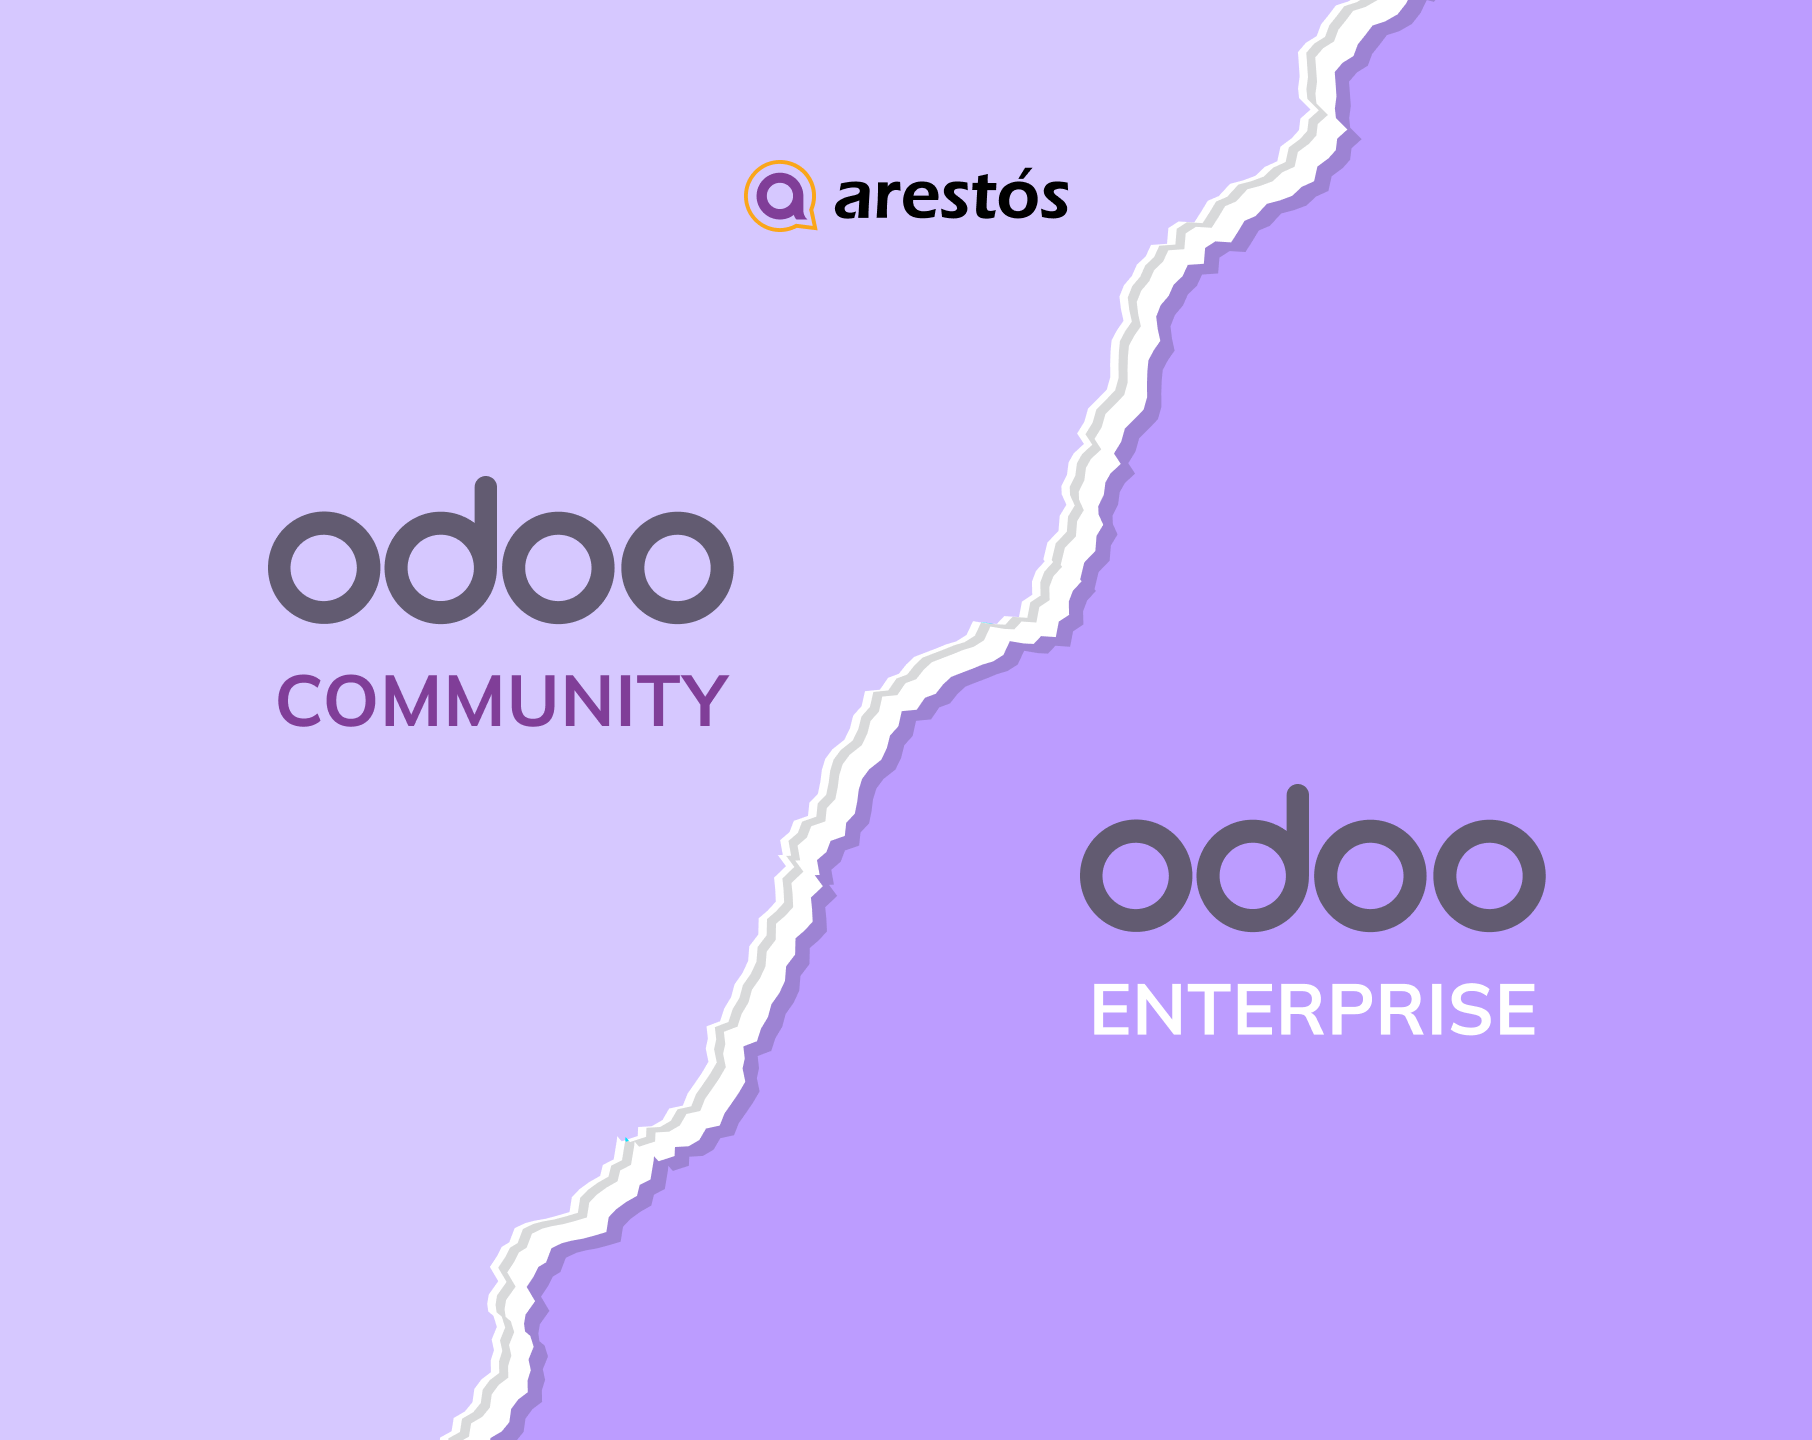 Odoo Community vs Odoo Enterprise